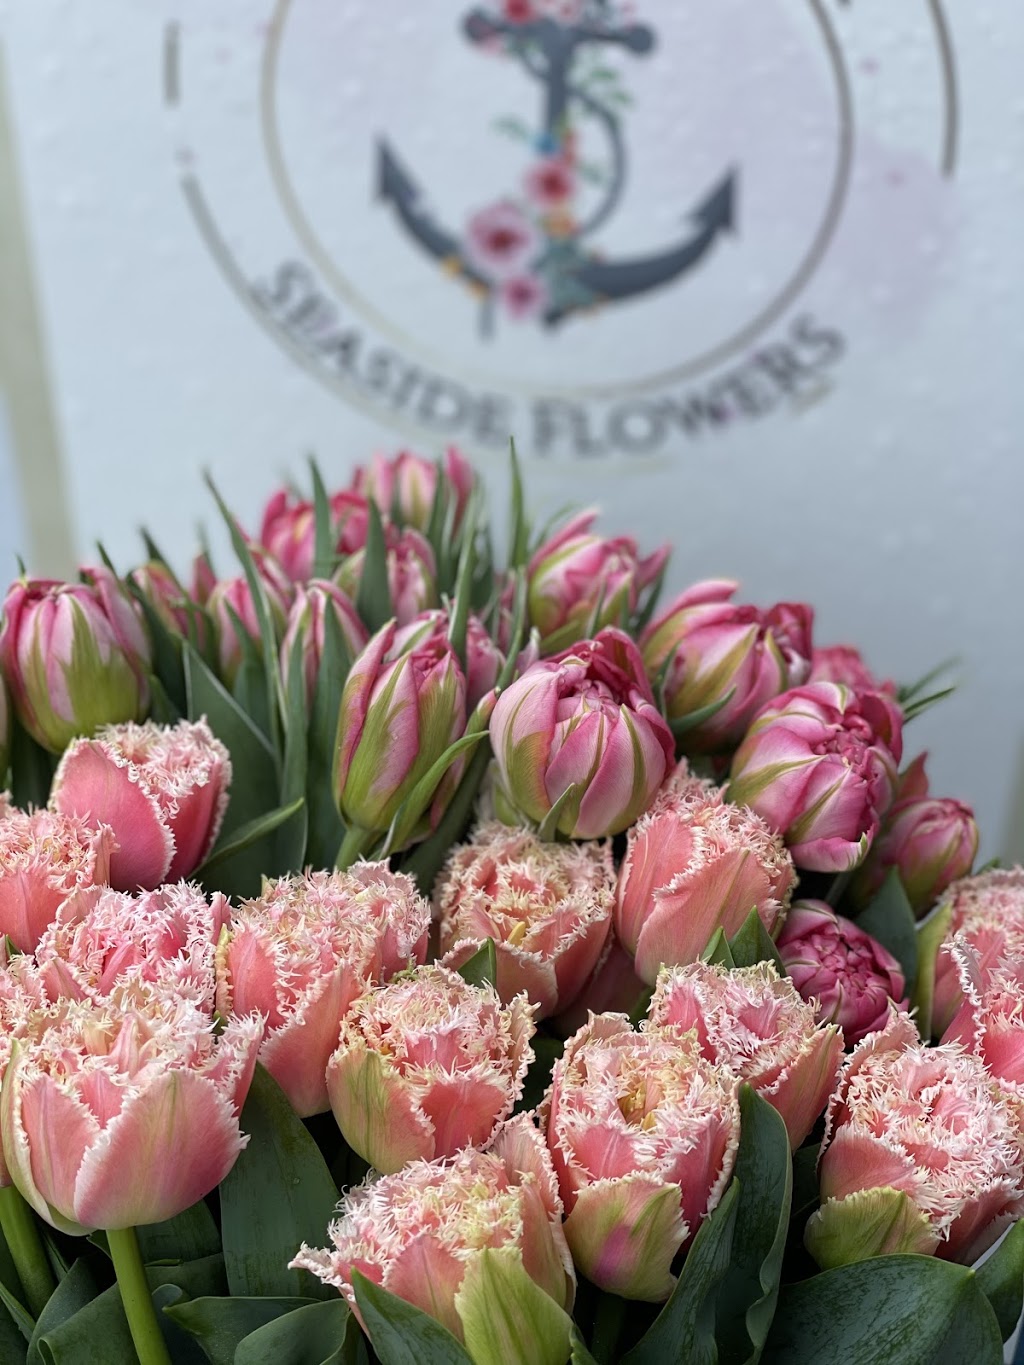 Scarborough Seaside Flowers | florist | 95 Landsborough Ave, Scarborough QLD 4020, Australia | 0478826338 OR +61 478 826 338